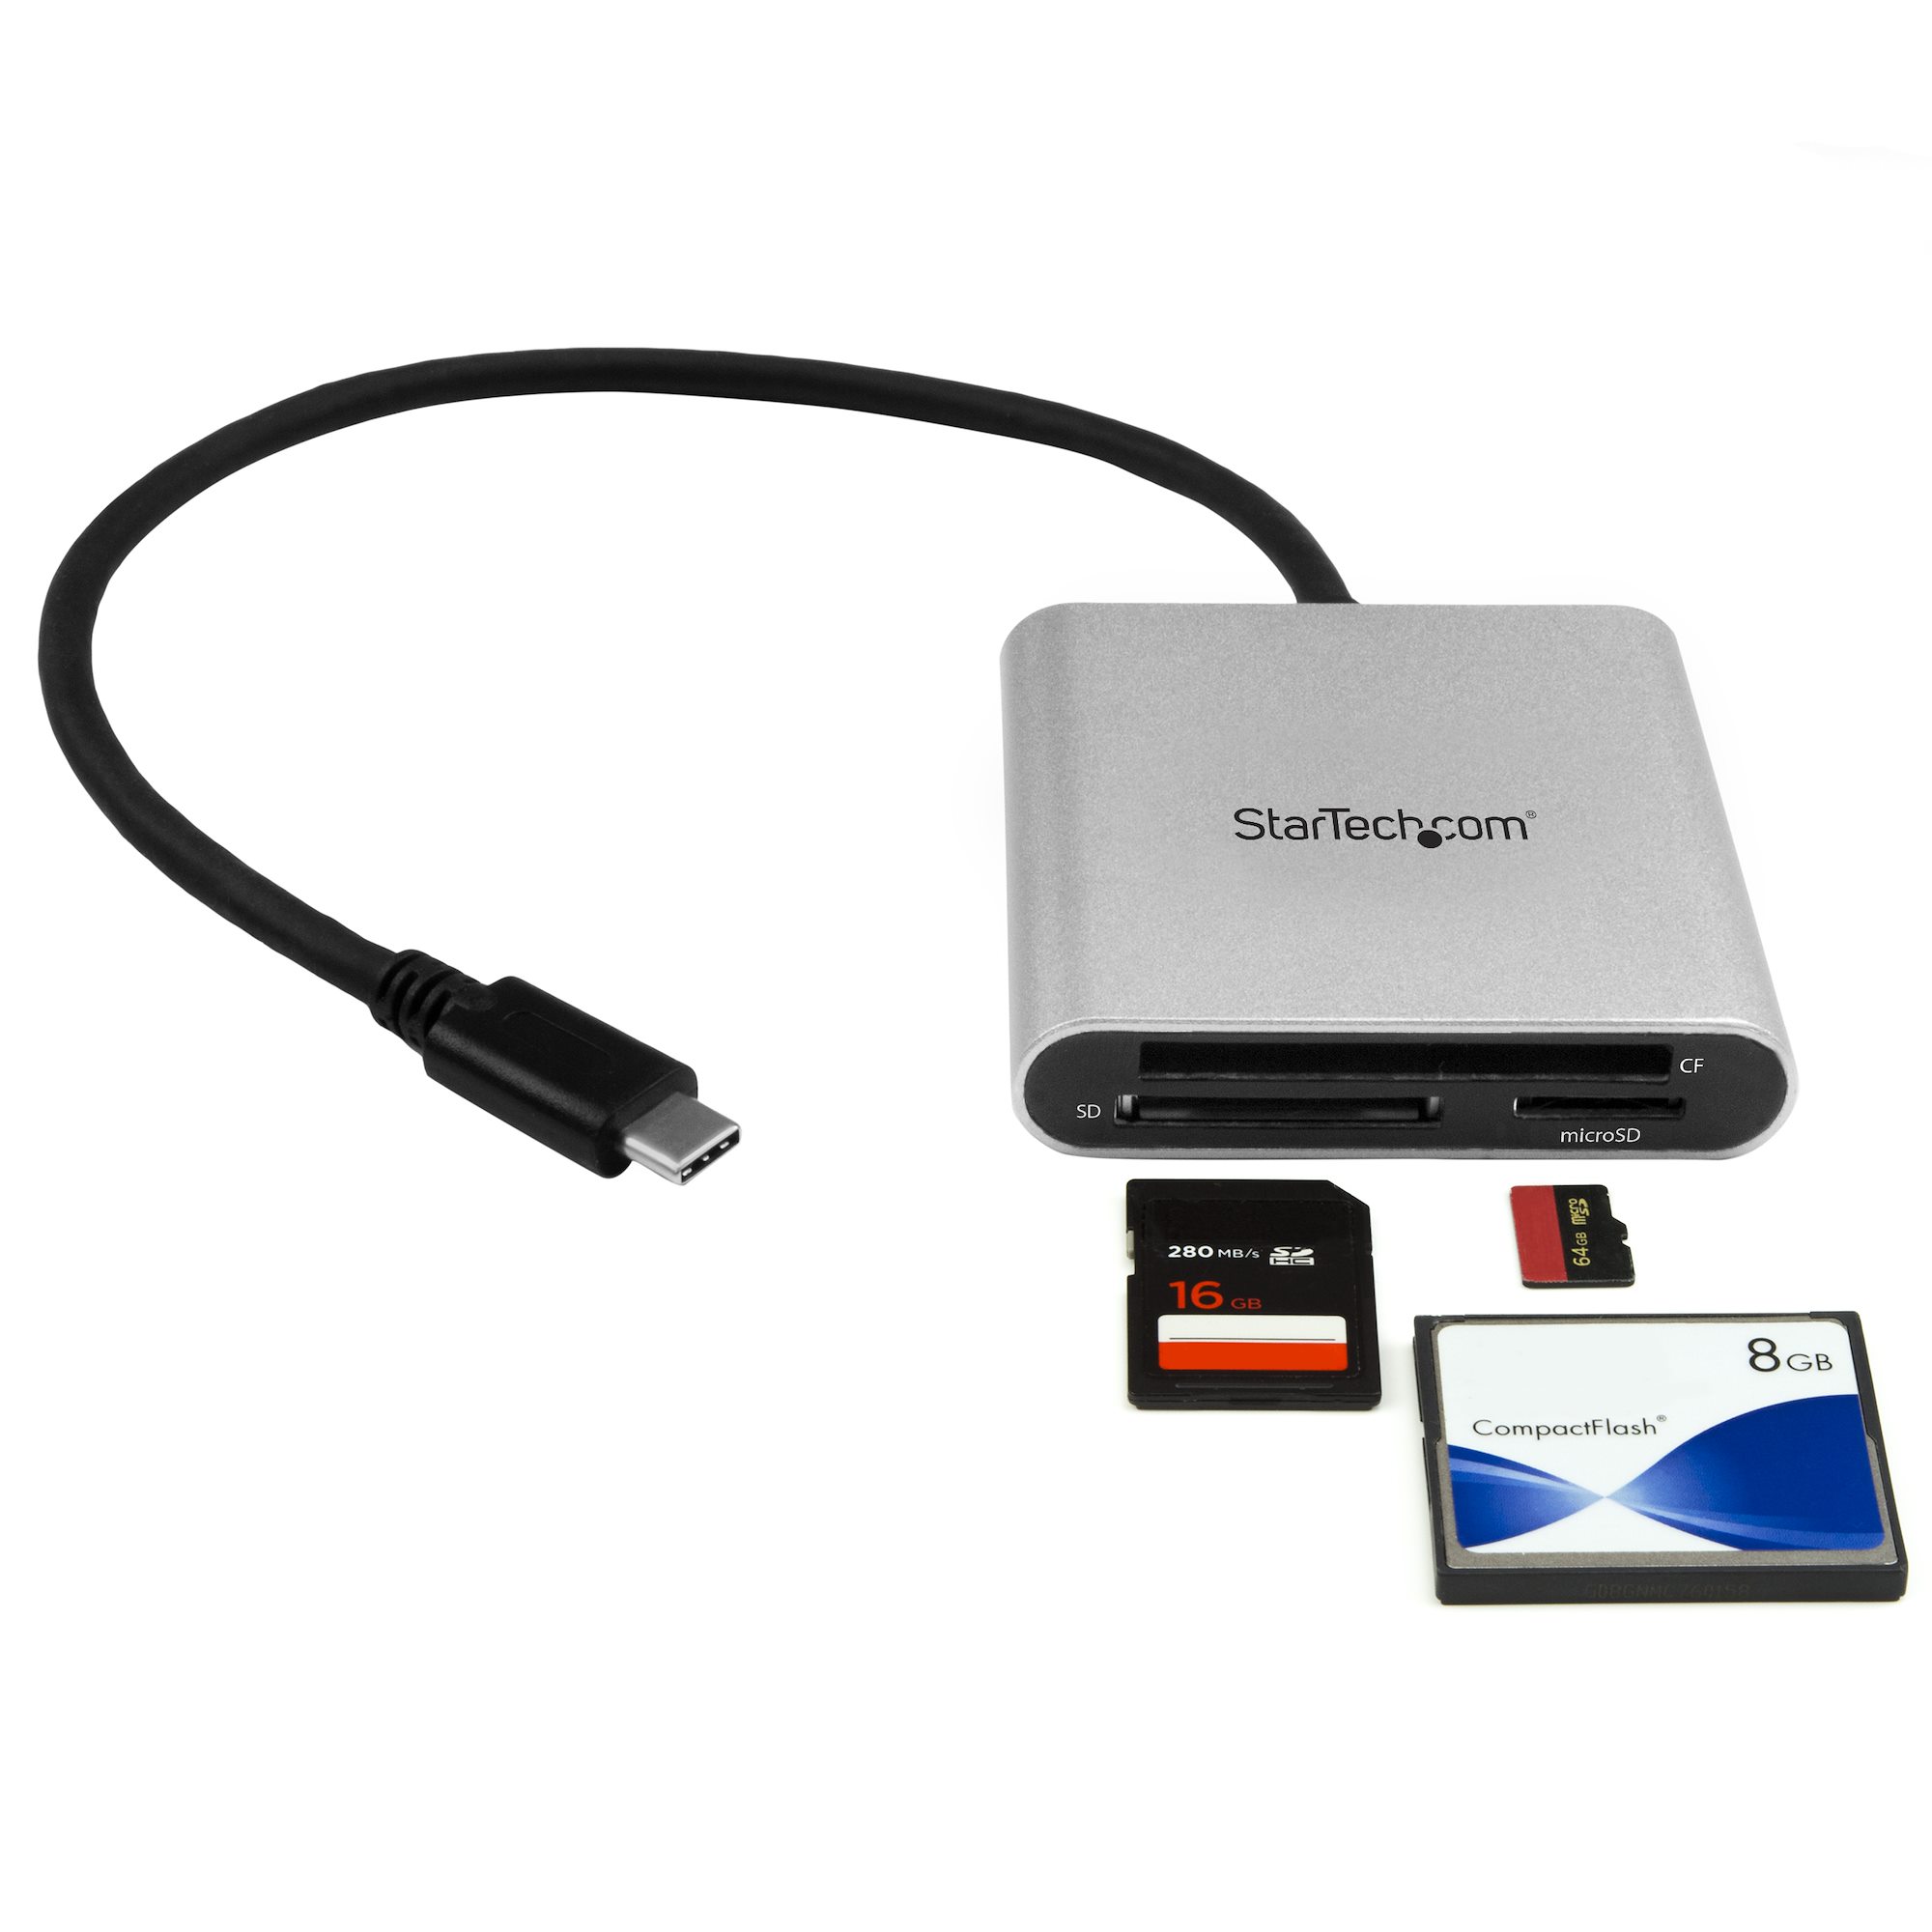 at donere Sig til side Måling Card Reader SD microSD CompactFlash USBC - USB Card Readers | StarTech.com